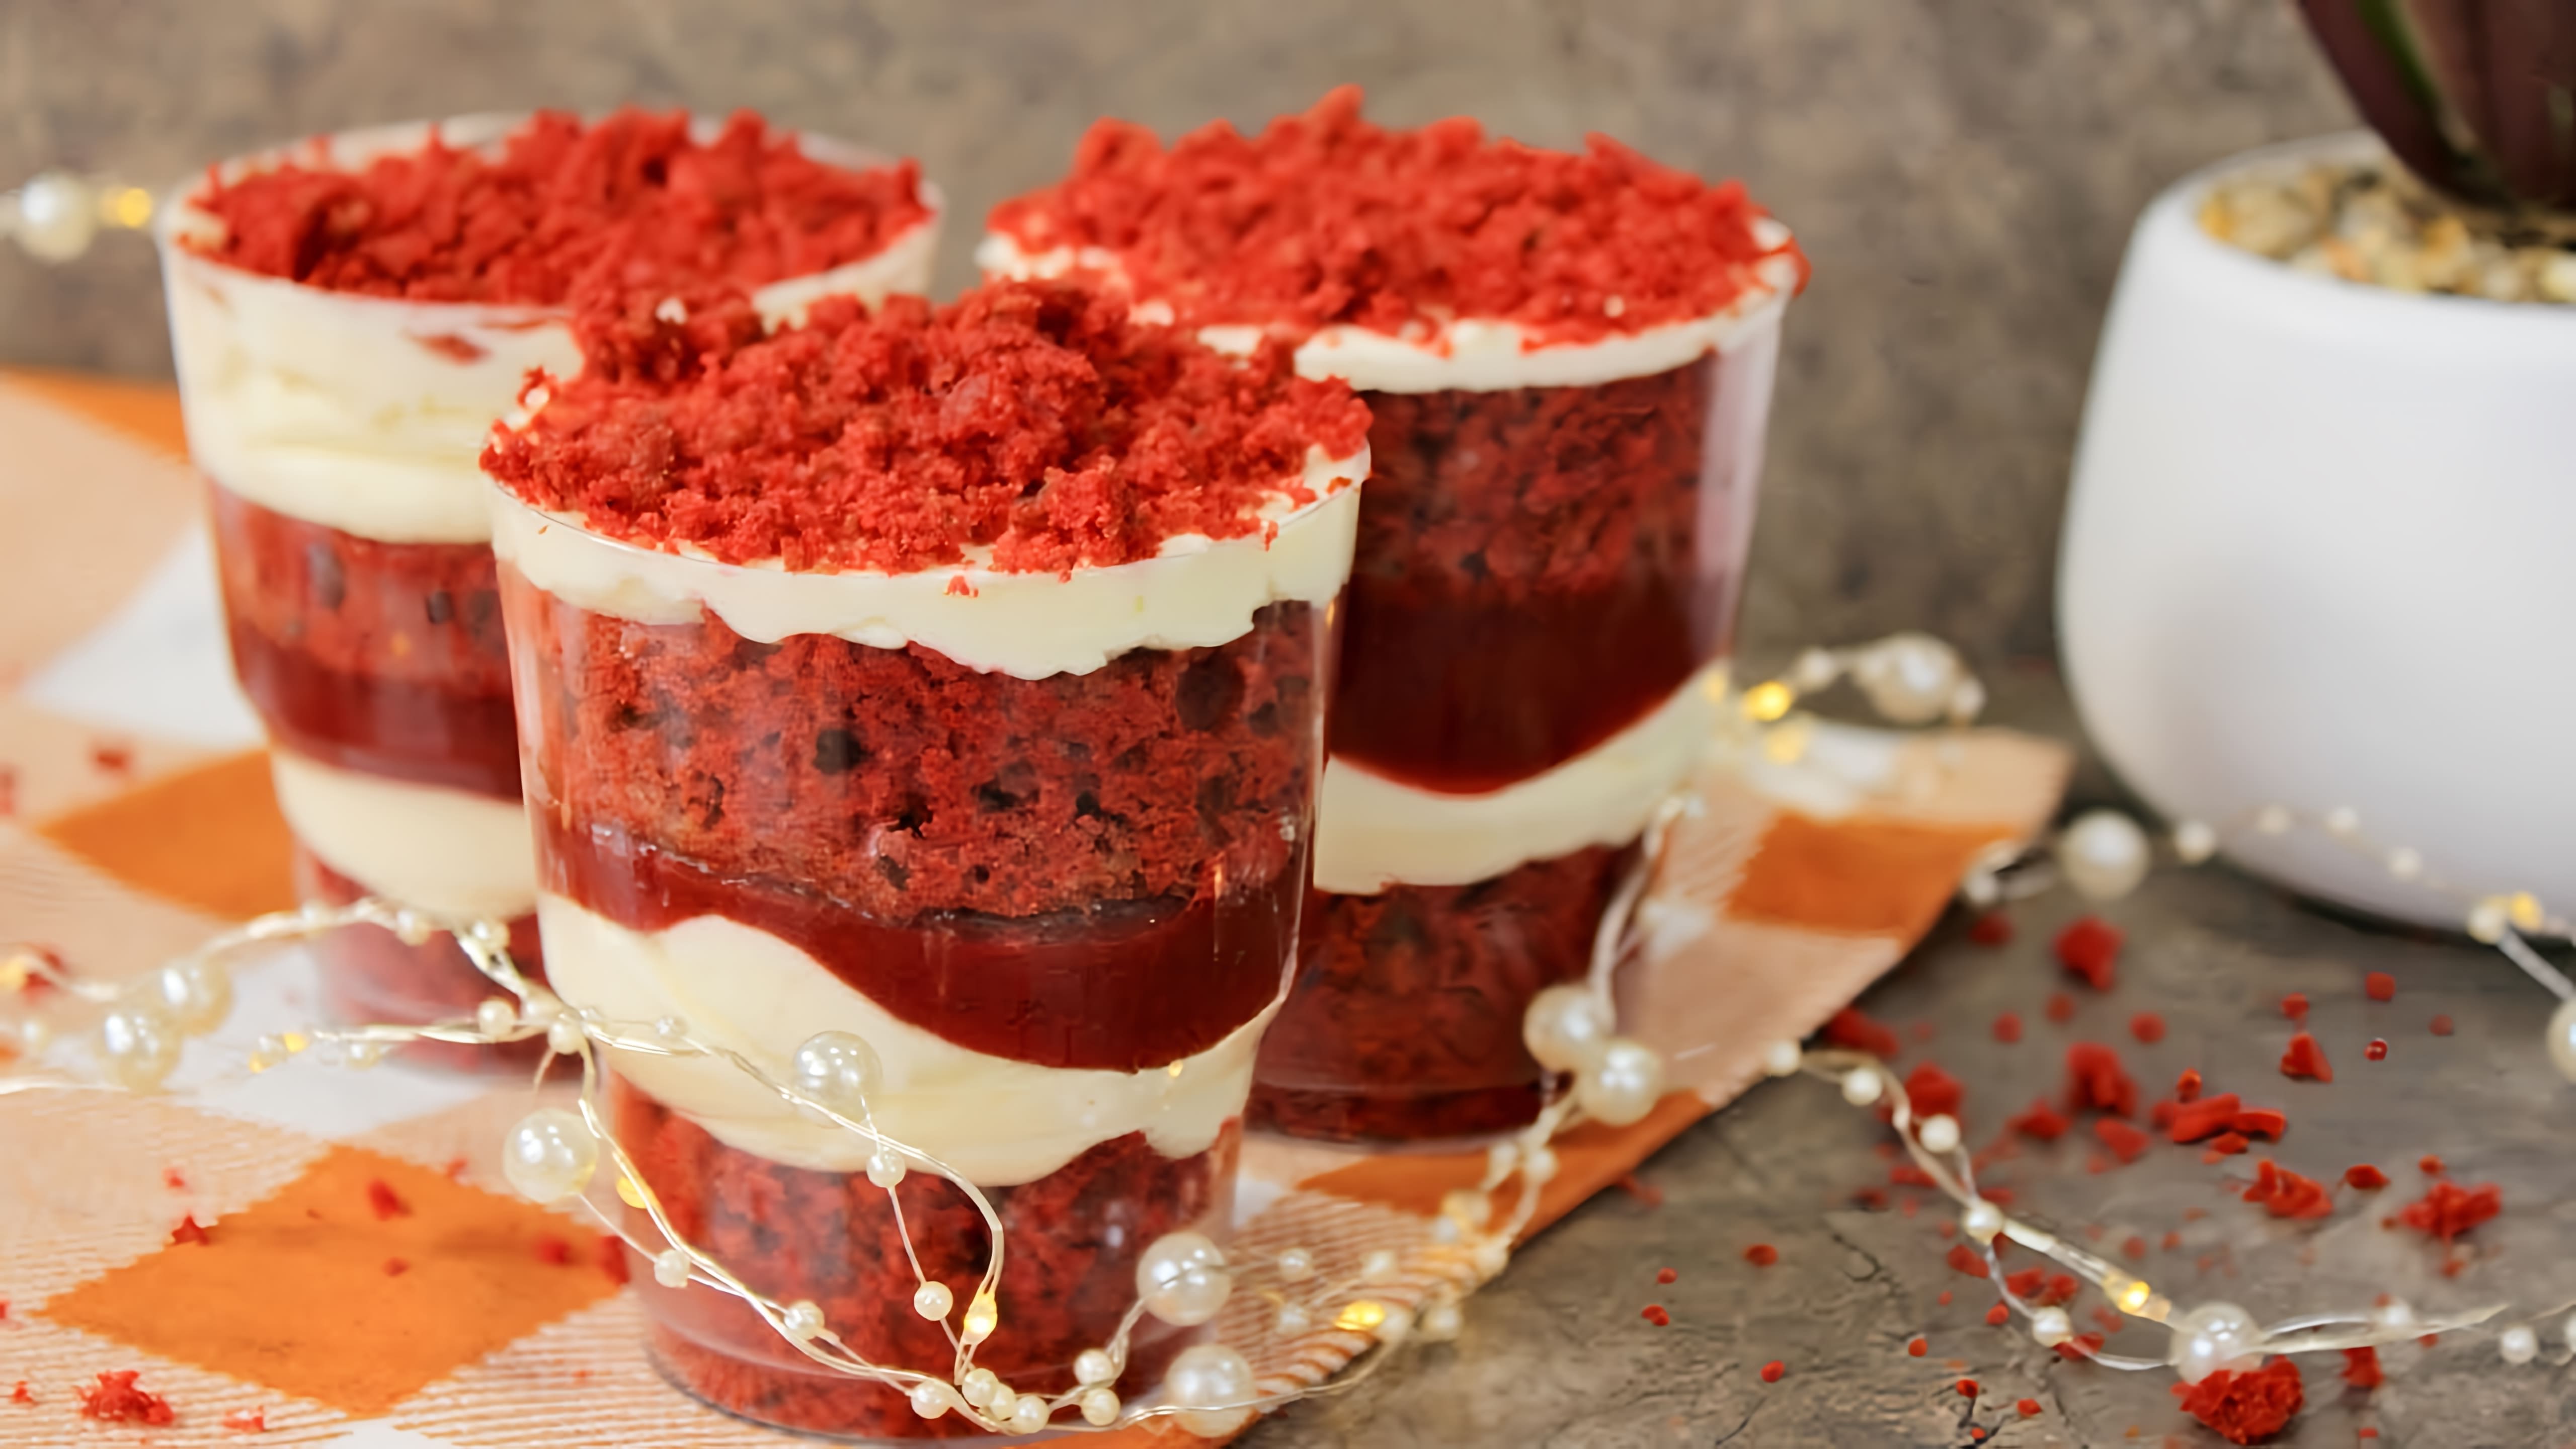 В этом видео демонстрируется процесс приготовления порционного десерта "Красный бархат" в стаканчиках